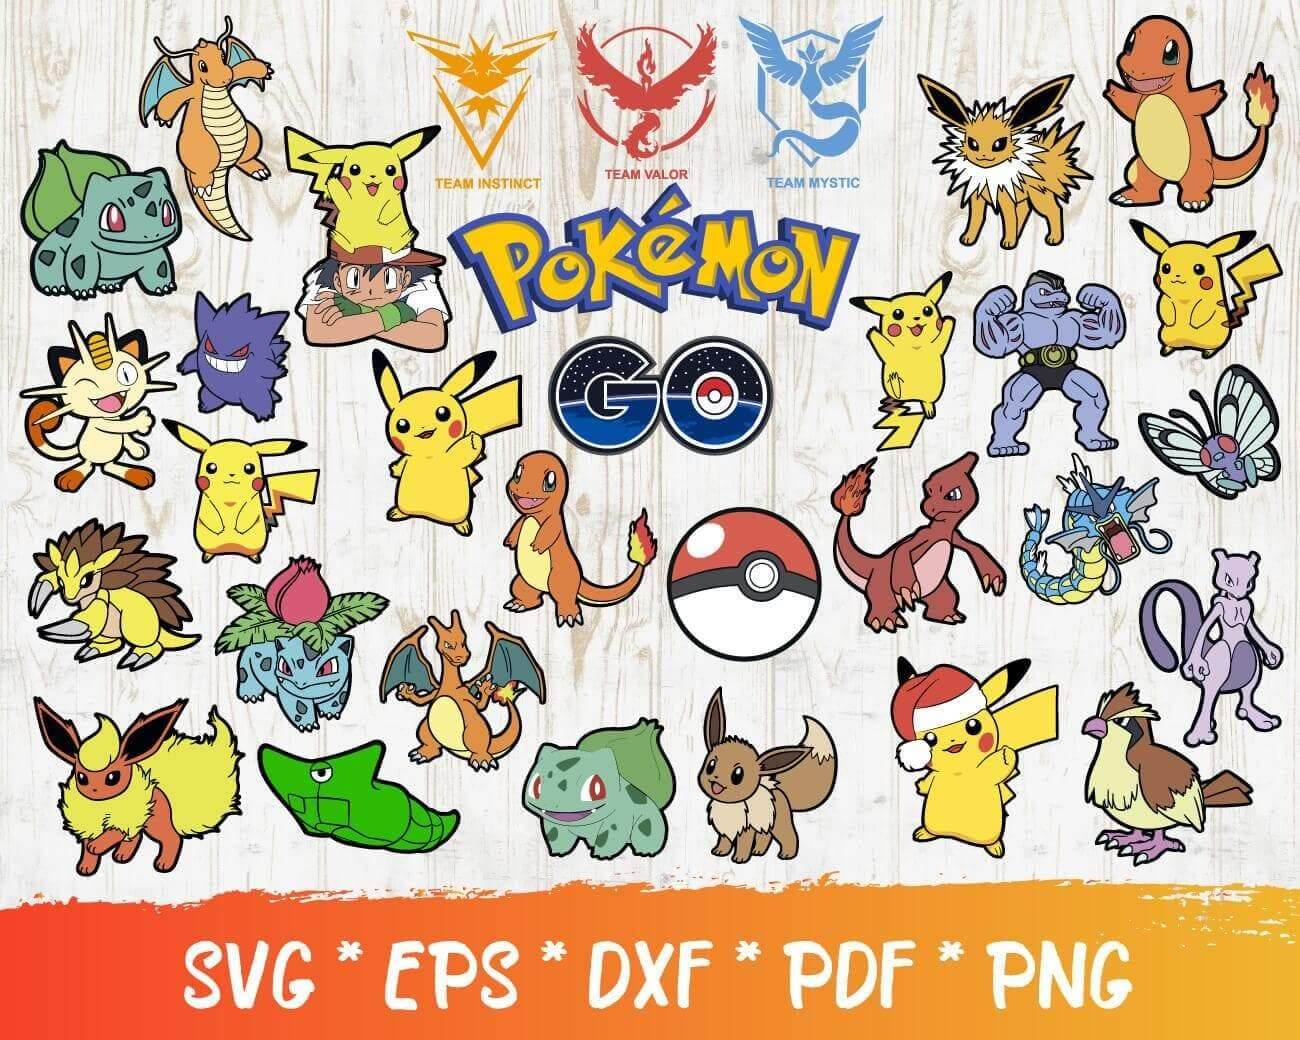 Eevee svg, Eevee png, Eevee vector pack image, Eevee Pokemon